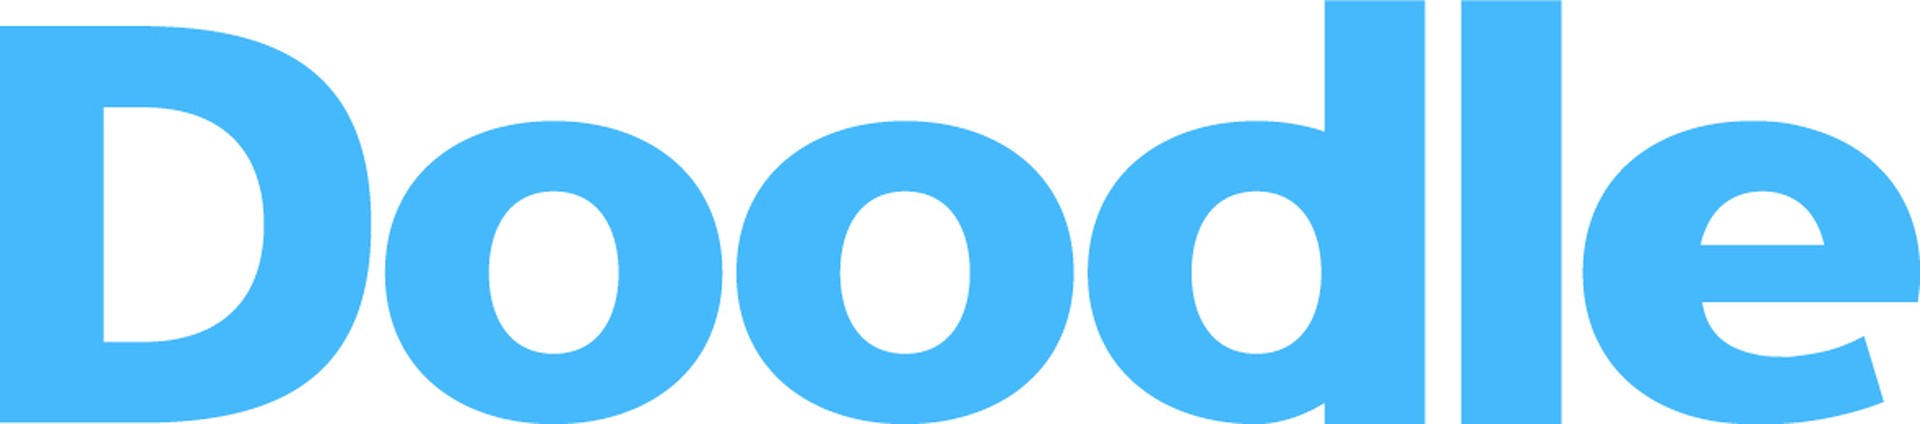 logo_dd.jpg